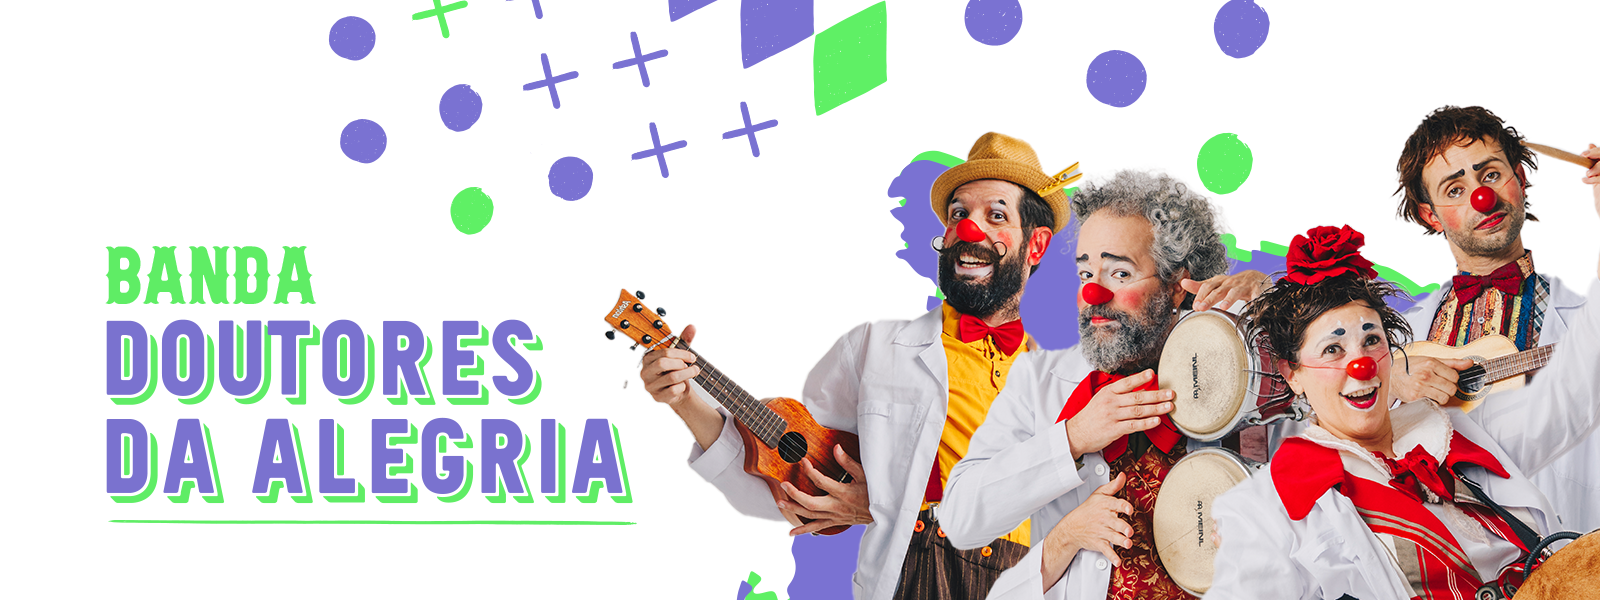 Banda Doutores da Alegria se apresenta no Sesc Pinheiros no carnaval